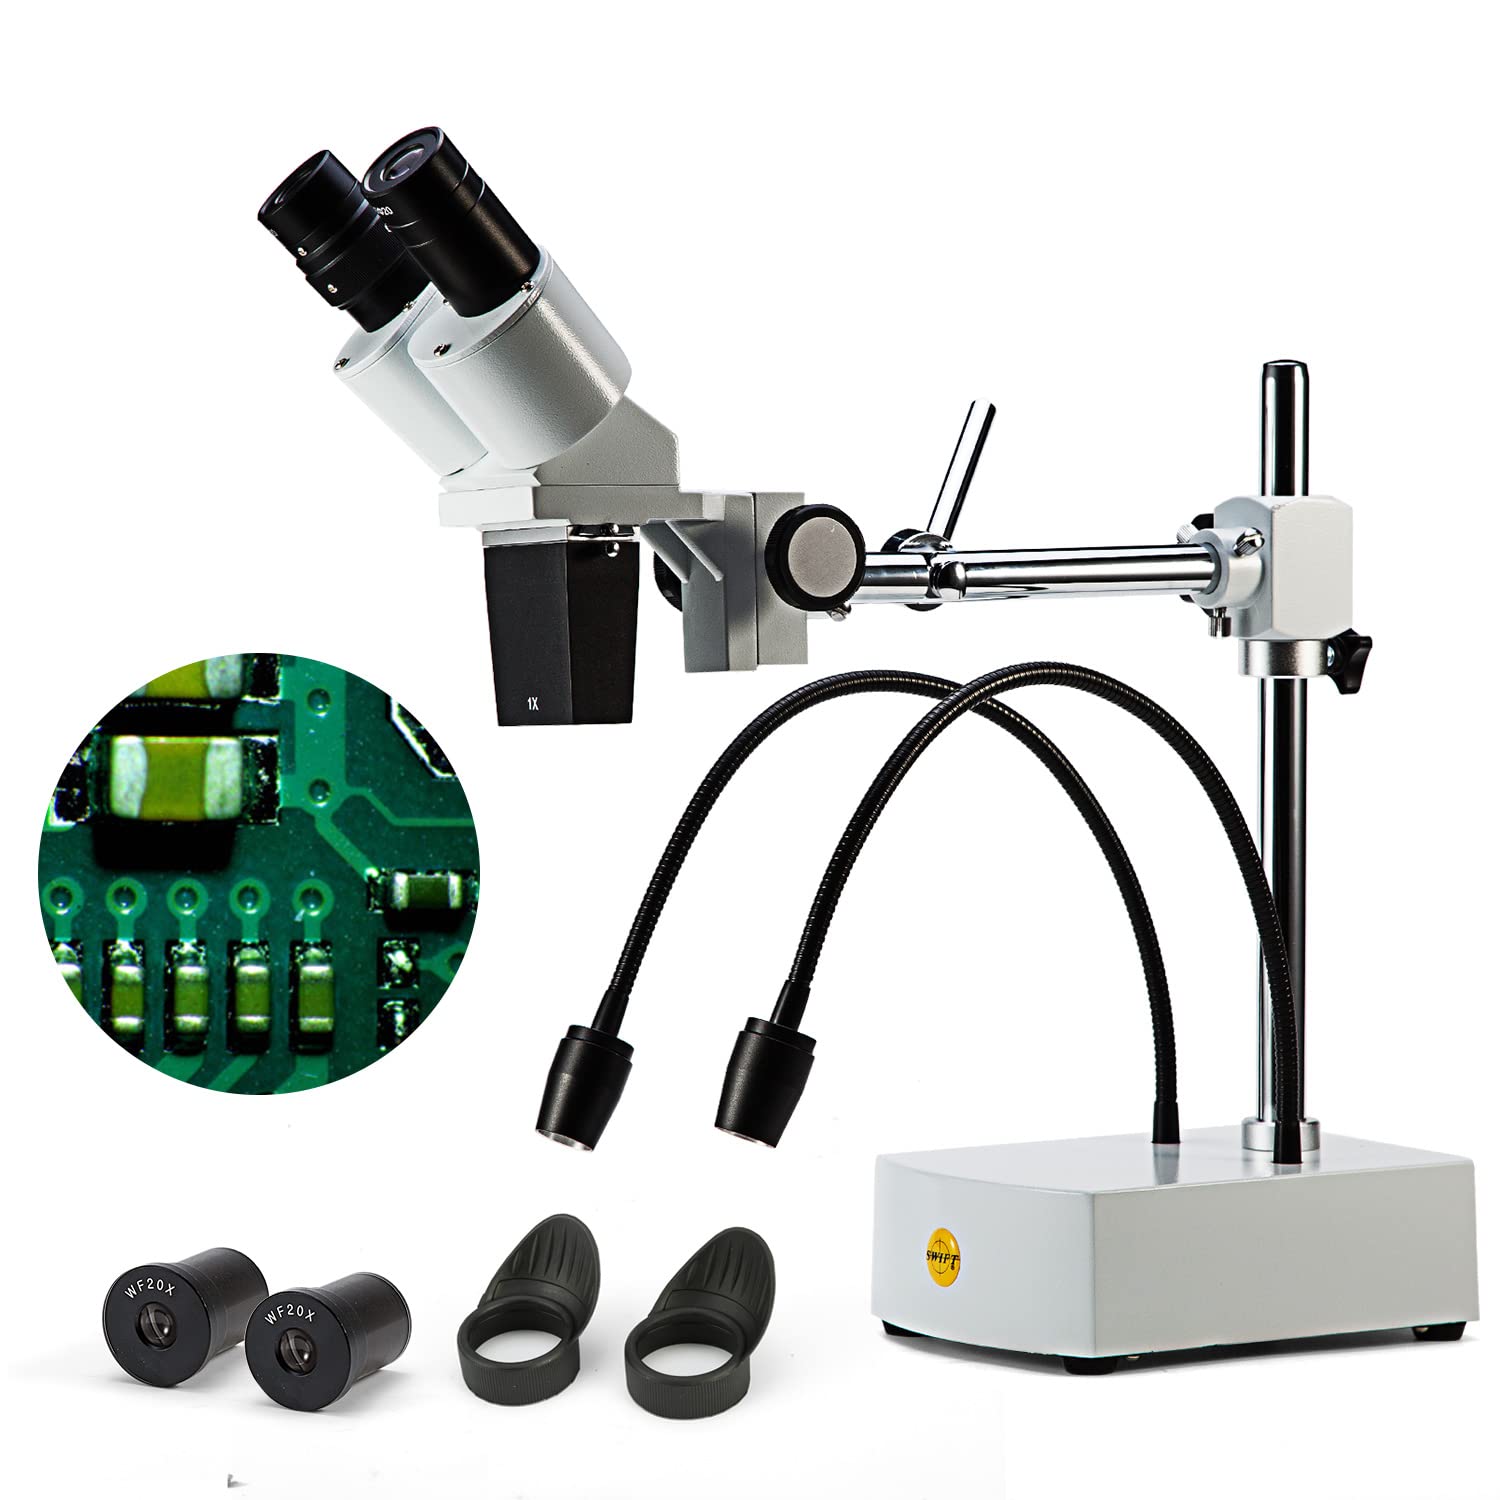 SWIFT Optical Professionelles Niveau 10X / 20X-Vergrößerung Binokulares Stereo-Mikroskop mit Weitwinkel 10X und 20X Okularen, 2 Flexible LED-Licht, Schwenkbarem Auslegerarm, und Kamerakompatibilität